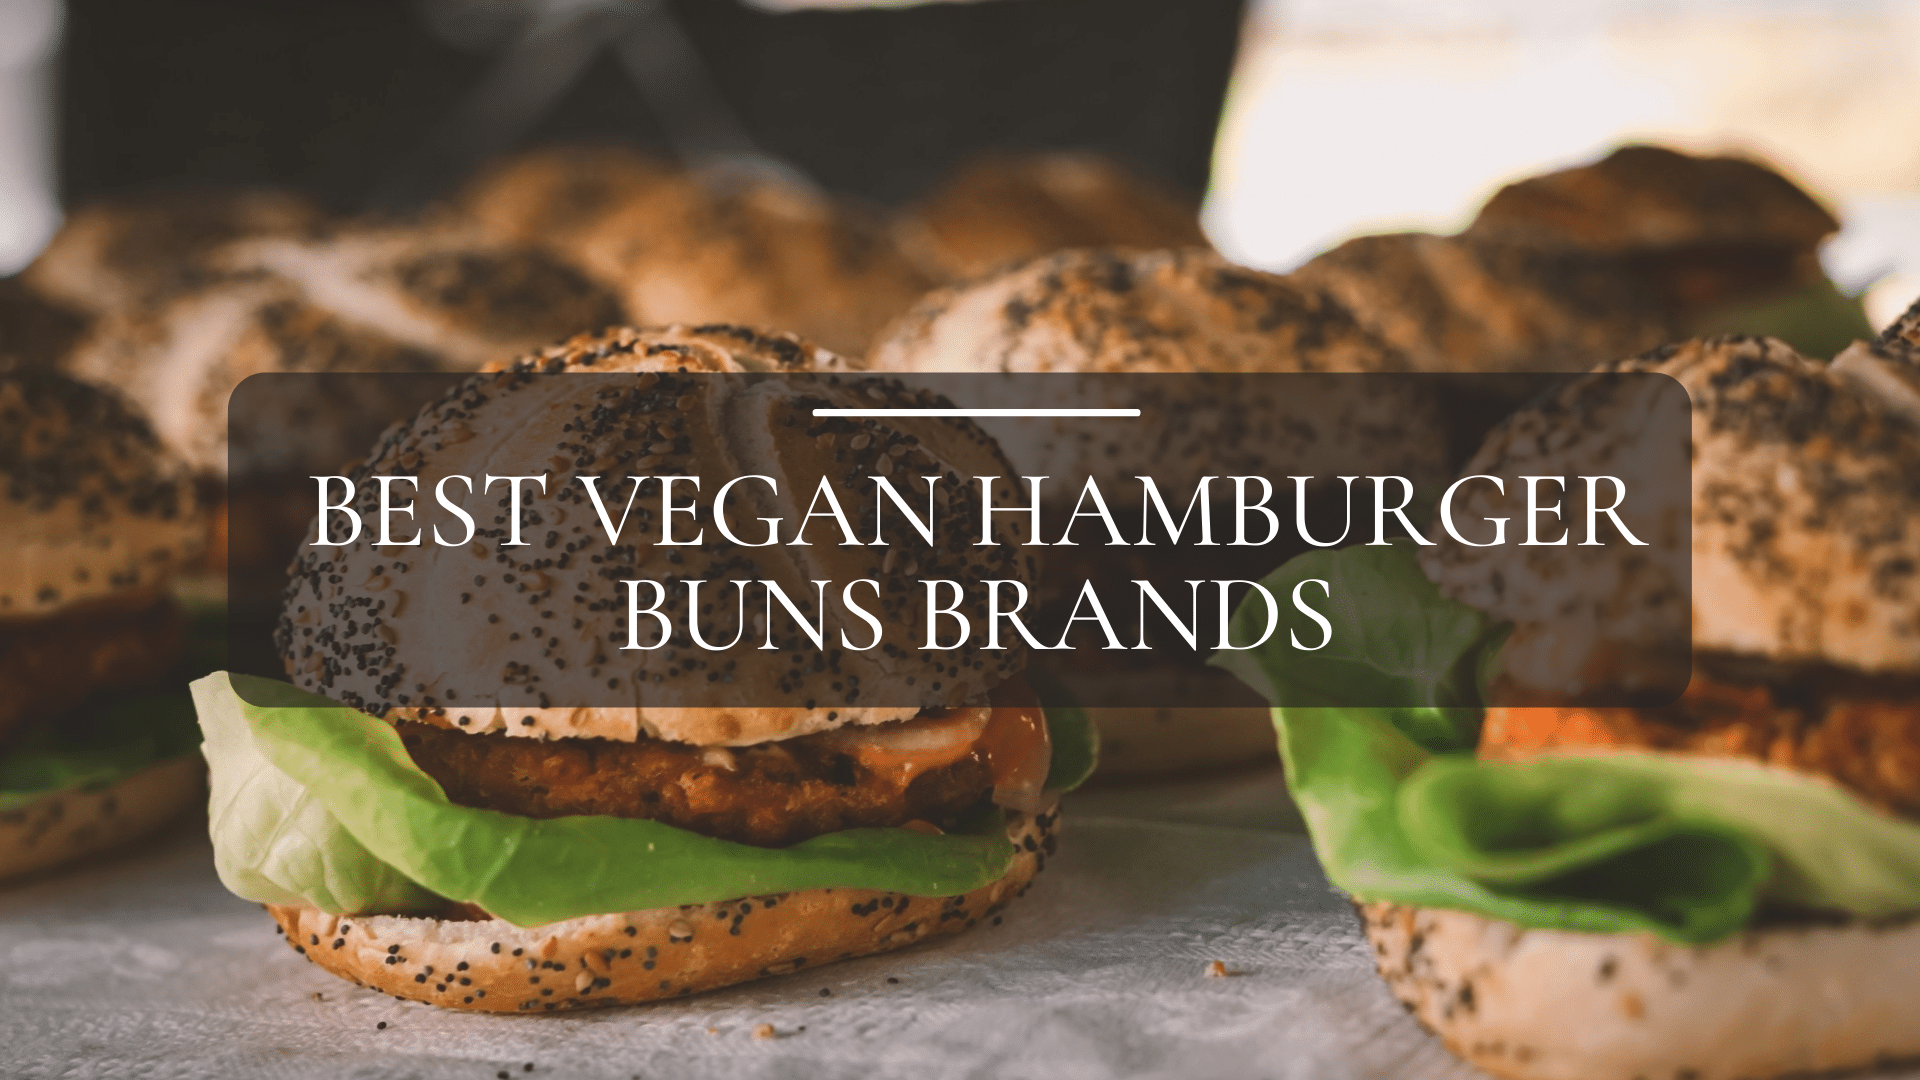 Best Vegan Hamburger Buns Brands